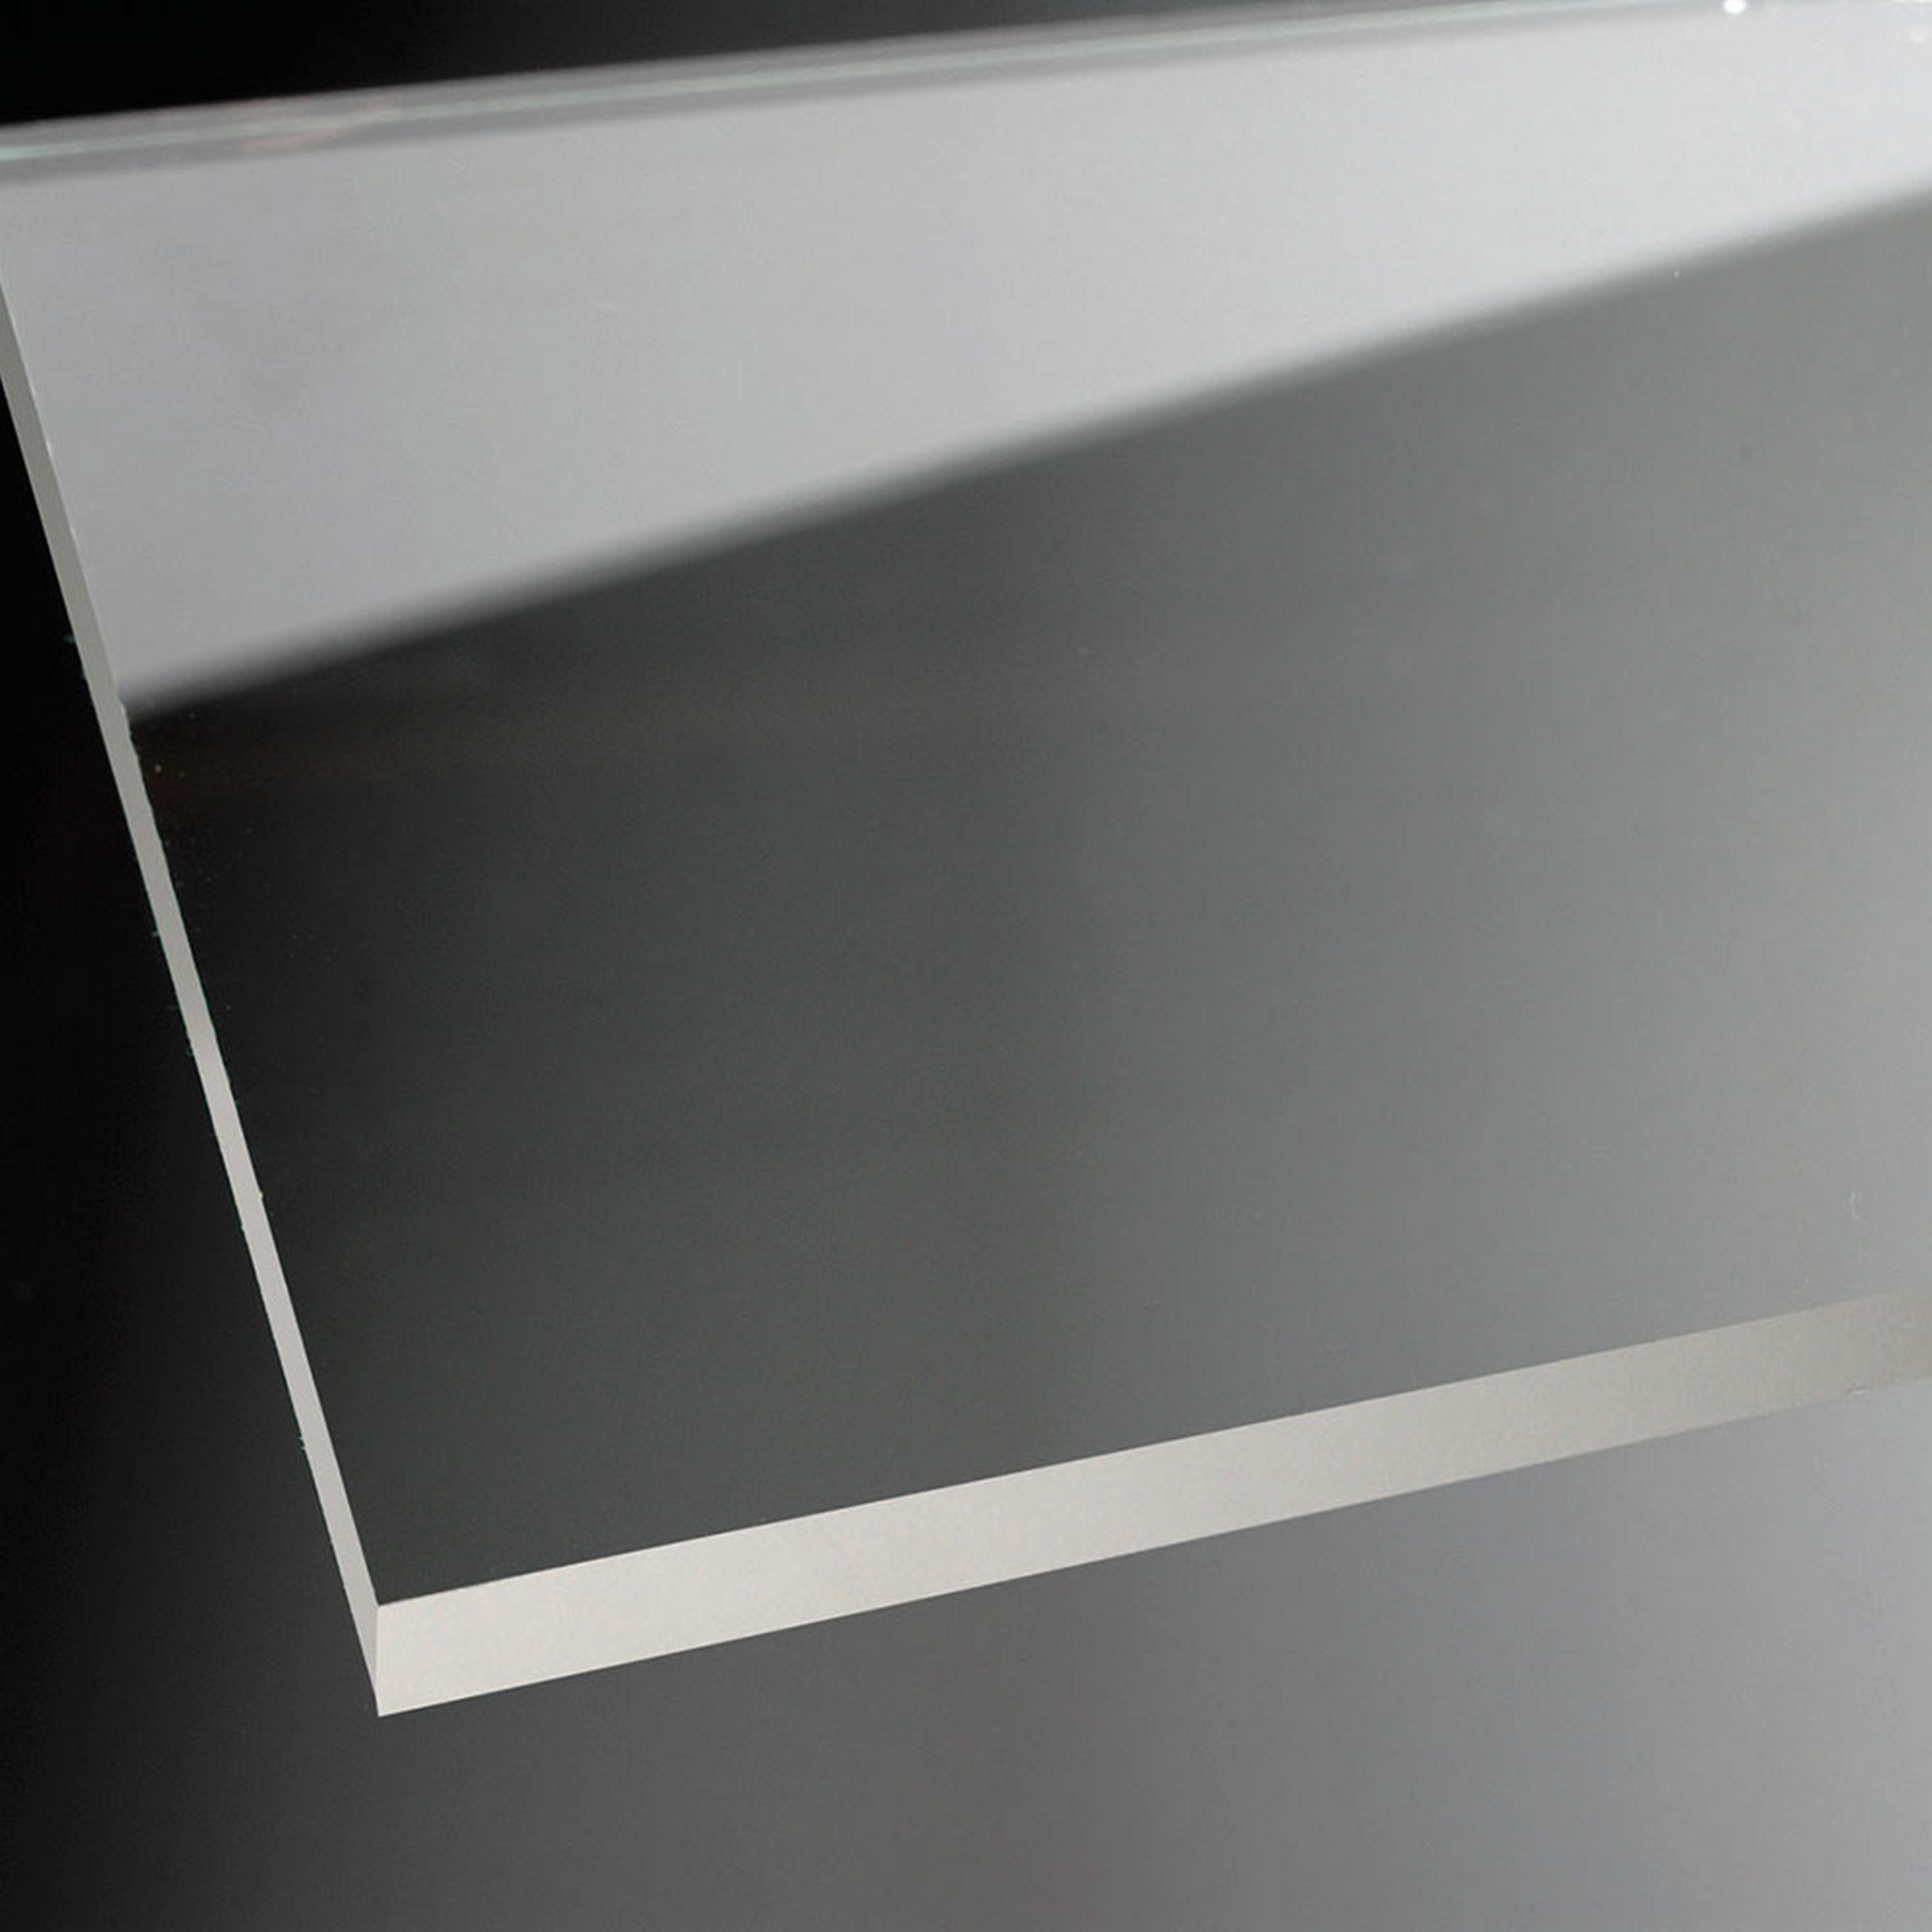 Eckeinstieg 'Elana Komfort' Drehfalt 90 x 90 cm, silber, Klarglas inklusive Beschichtung + product picture